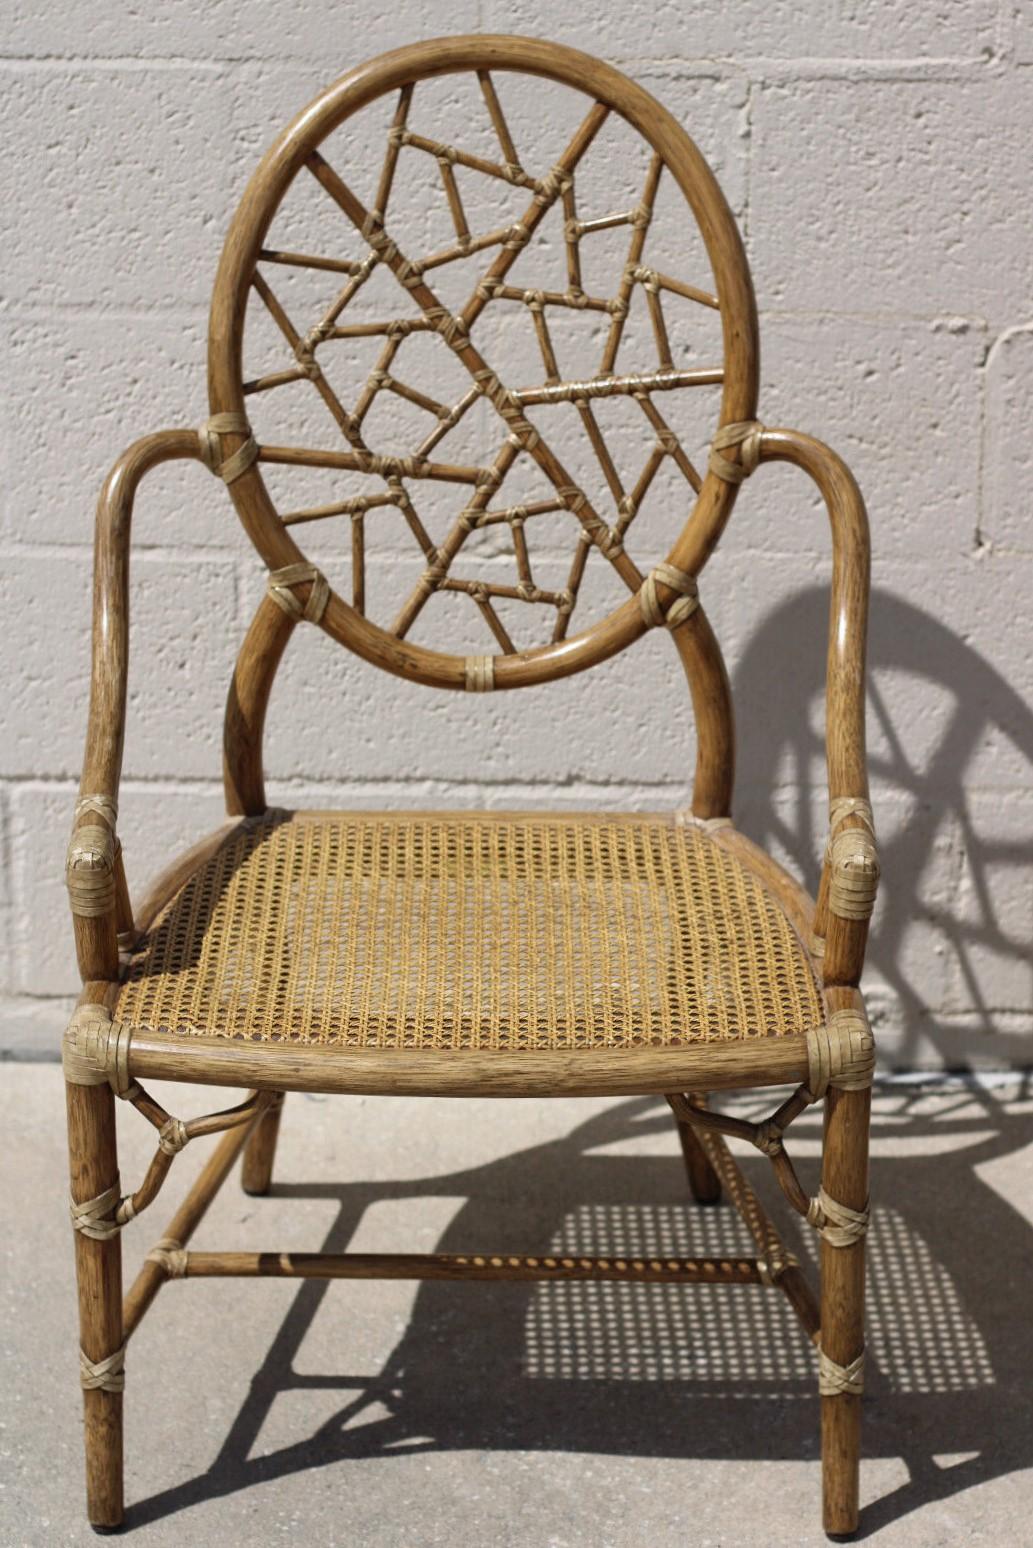 Ein Set aus vier ikonischen Rattan-Stühlen mit Rissbildung, entworfen von der bahnbrechenden Innovatorin Elinor McGuire. Das Design ist berühmt für seine ovale Rückenlehne aus Rattan, die kleinere, mit Rohleder verbundene Rattanteile einrahmt und